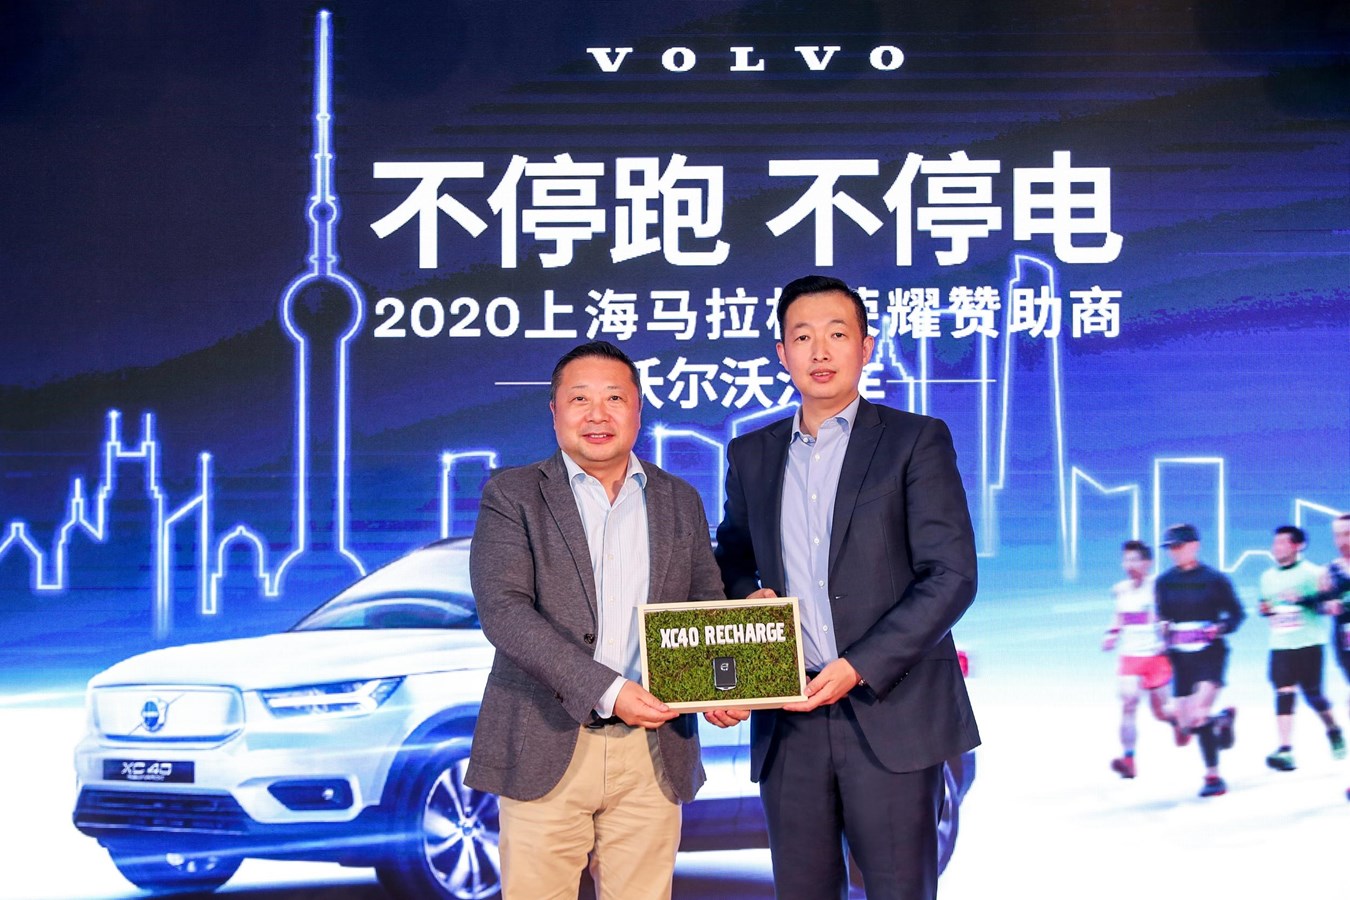 沃尔沃XC40 RECHARGE将担任2020上海马拉松的赛事计时用车